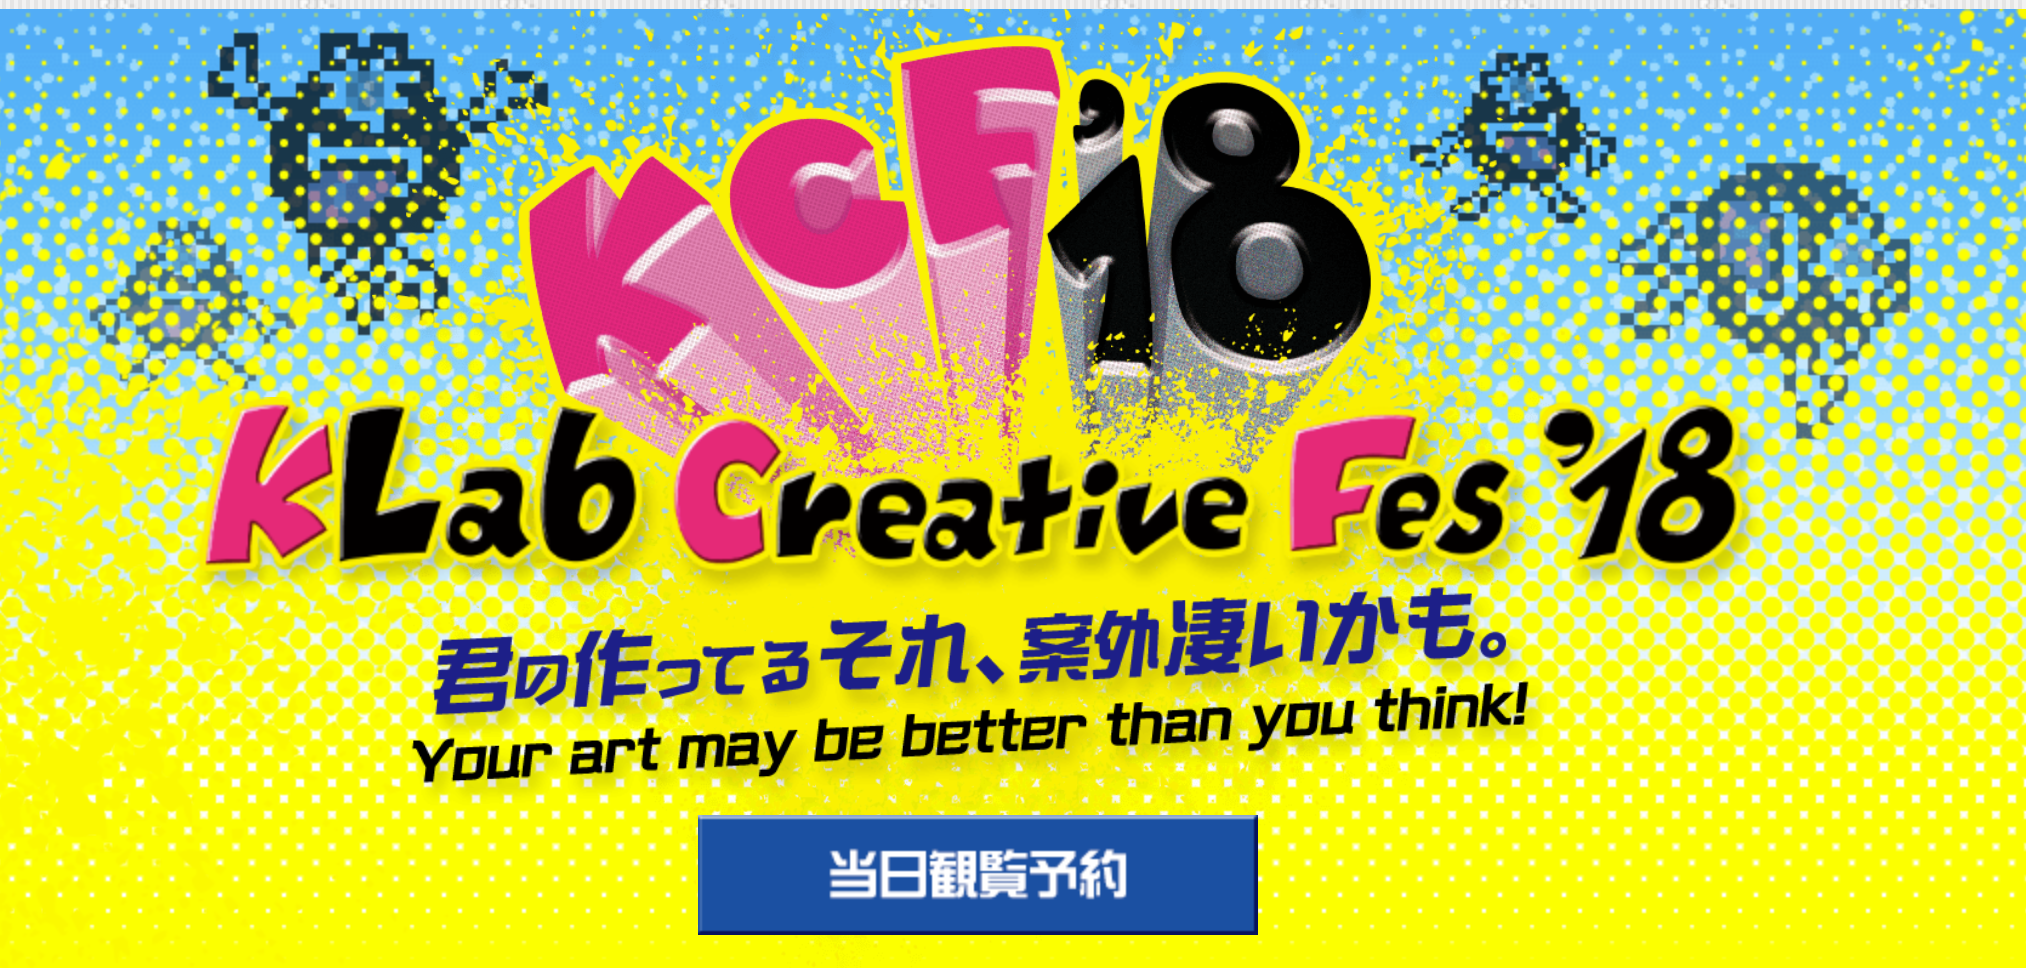 日本一の学生3DCGデザイナーが決まる！「KLab Creative Fes'18」観覧者を募集！田島光二氏によるライブスカルプティング、 世界で活躍する豪華審査員によるパネルディスカッションなど多彩なプログラムも